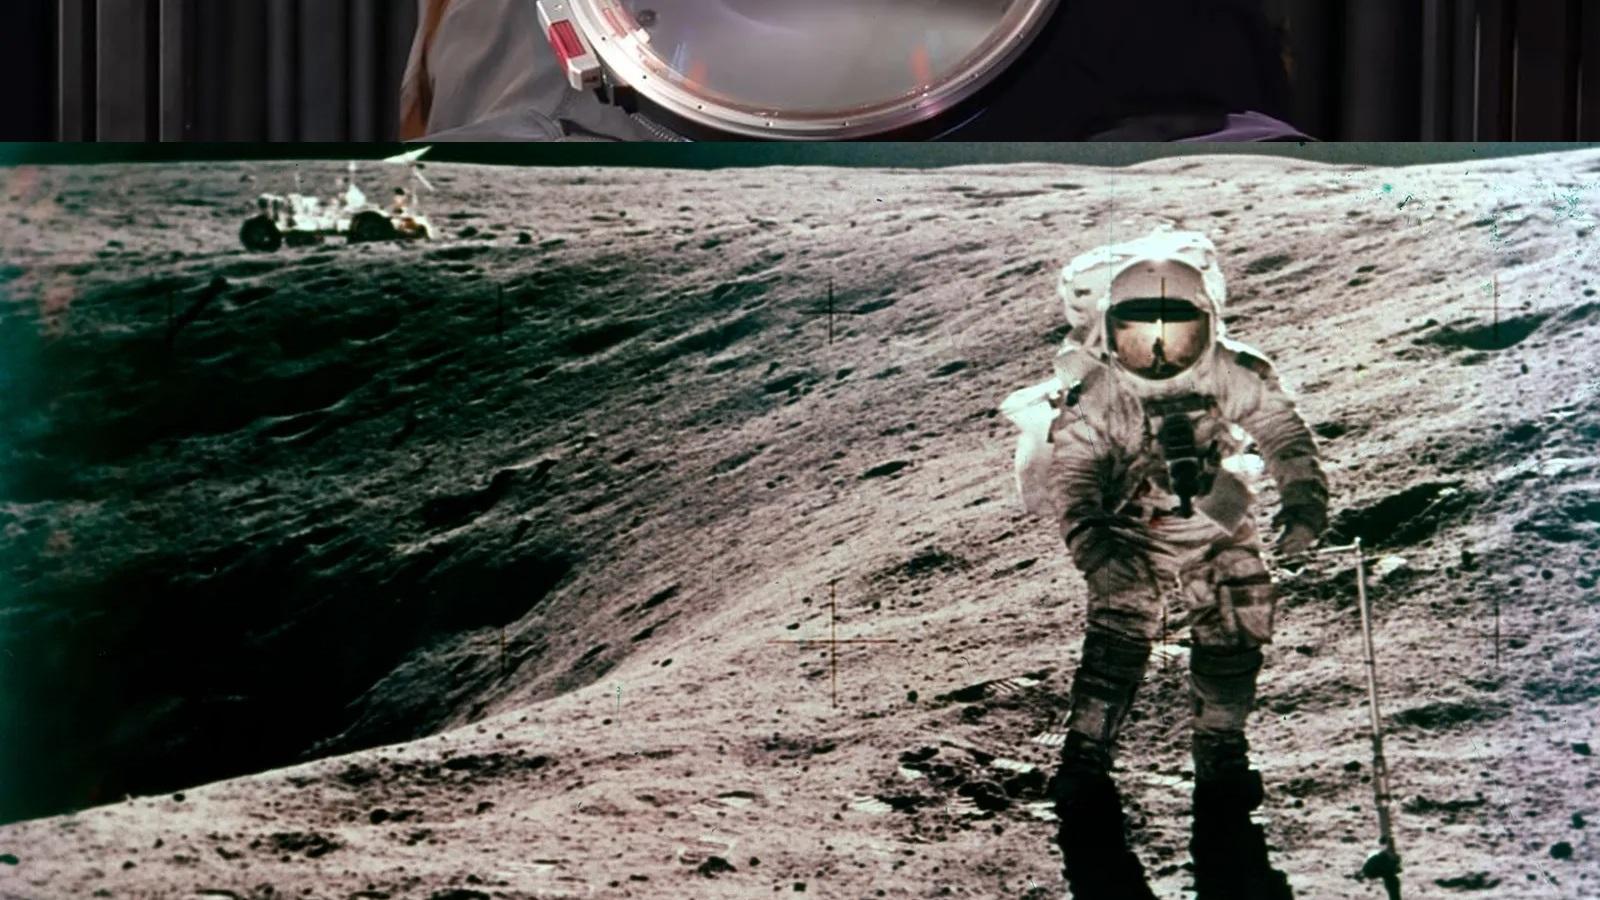 Foto do homem na lua